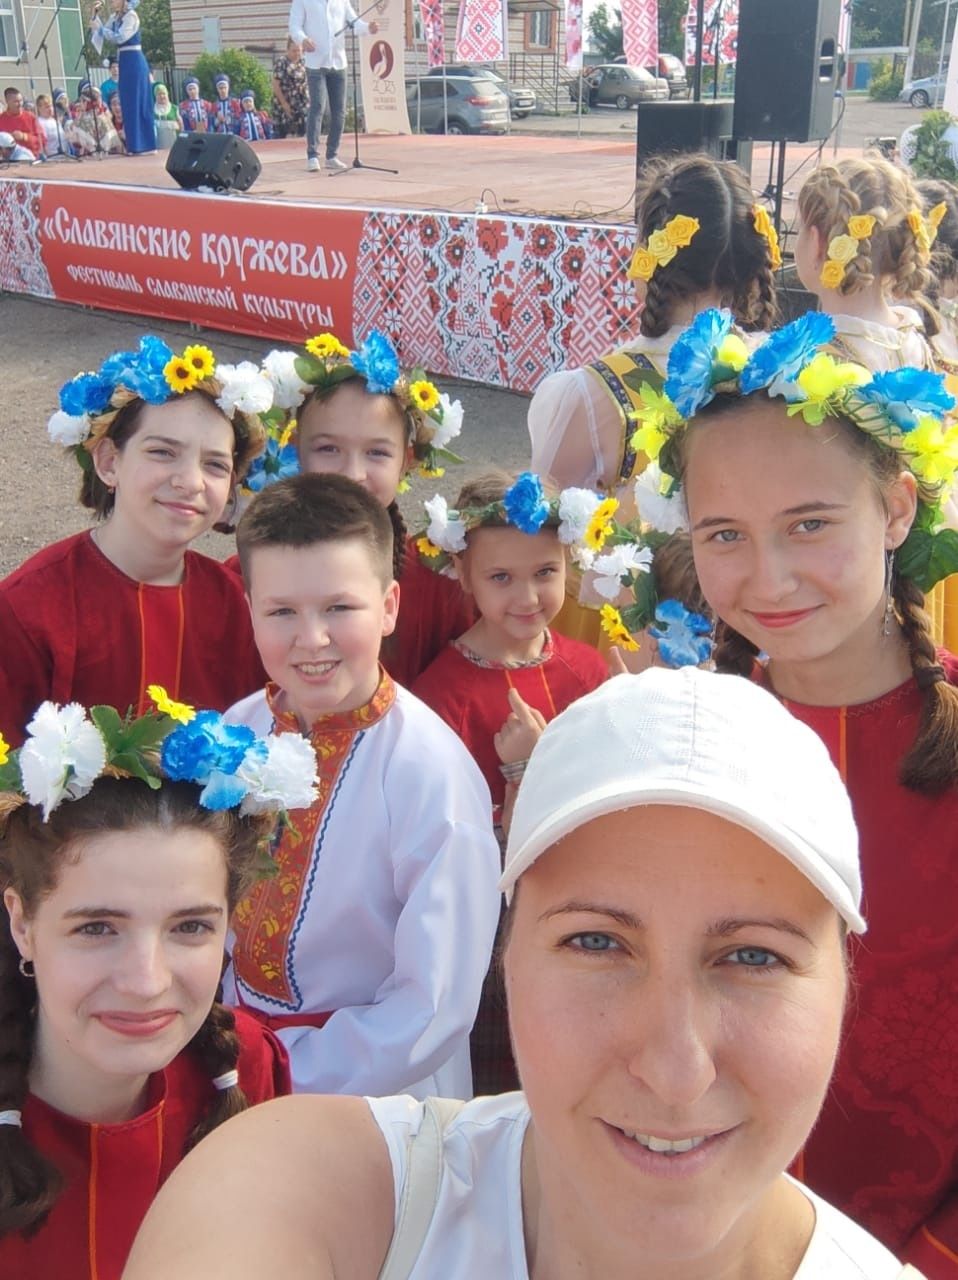 Творческие коллективы из Бугульмы выступили на фестивале в Альметьевском районе